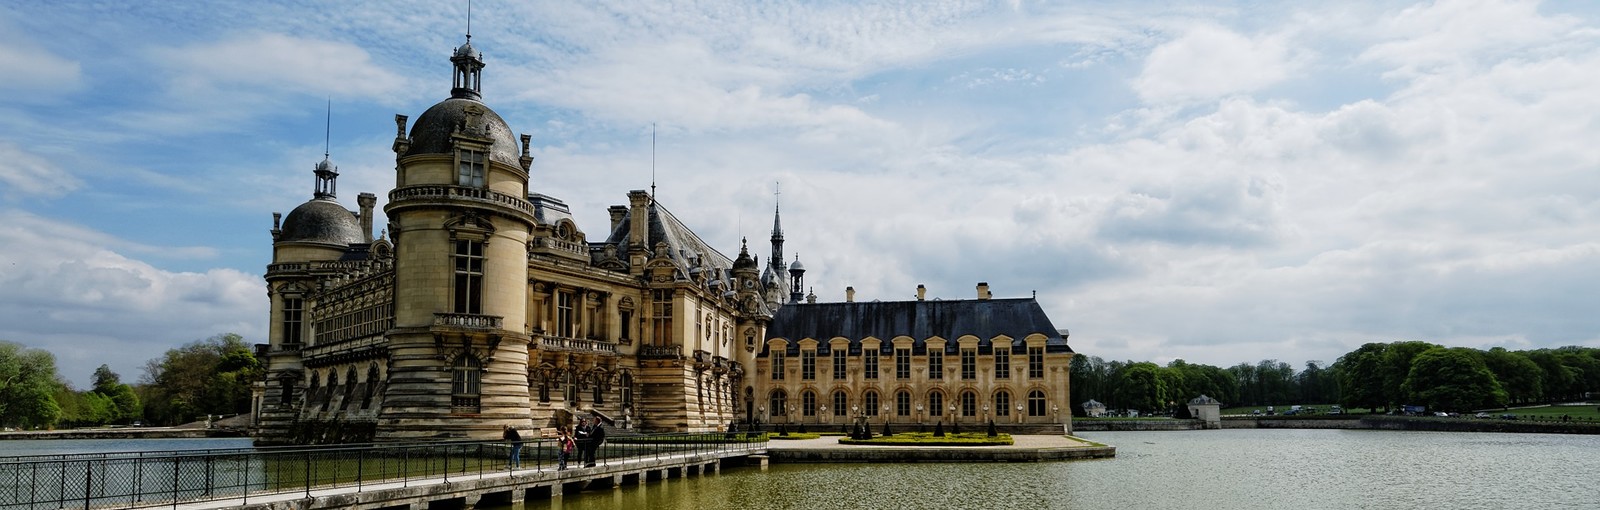 Tours Chantilly - Medio-días - Excursiones desde París